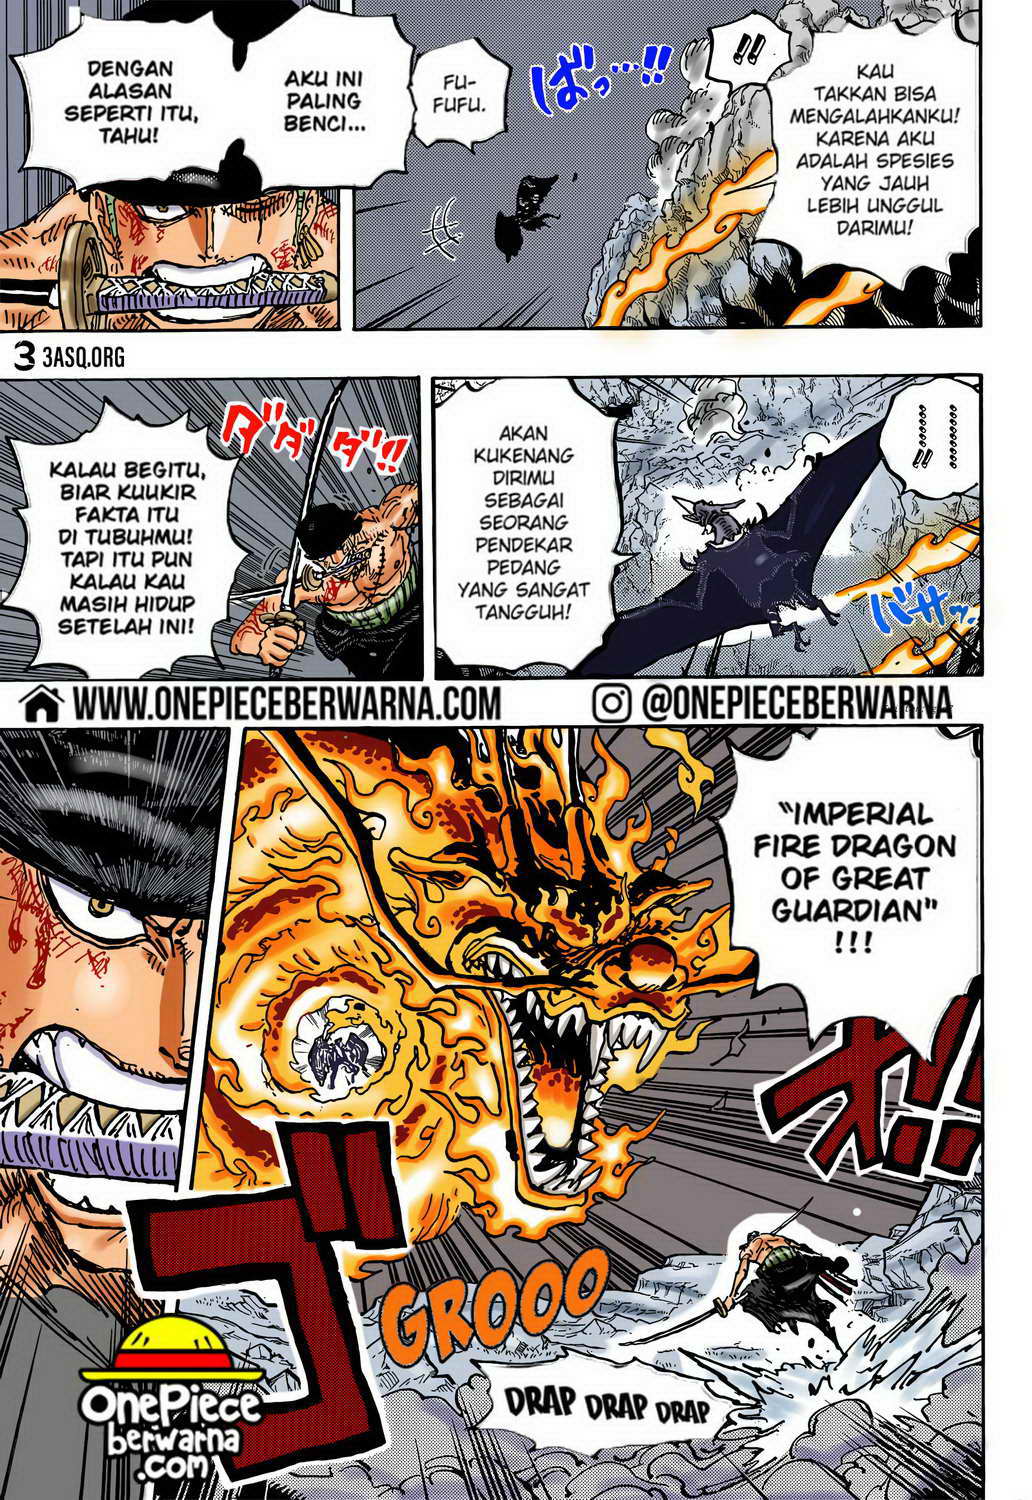 One Piece Berwarna Chapter 1035